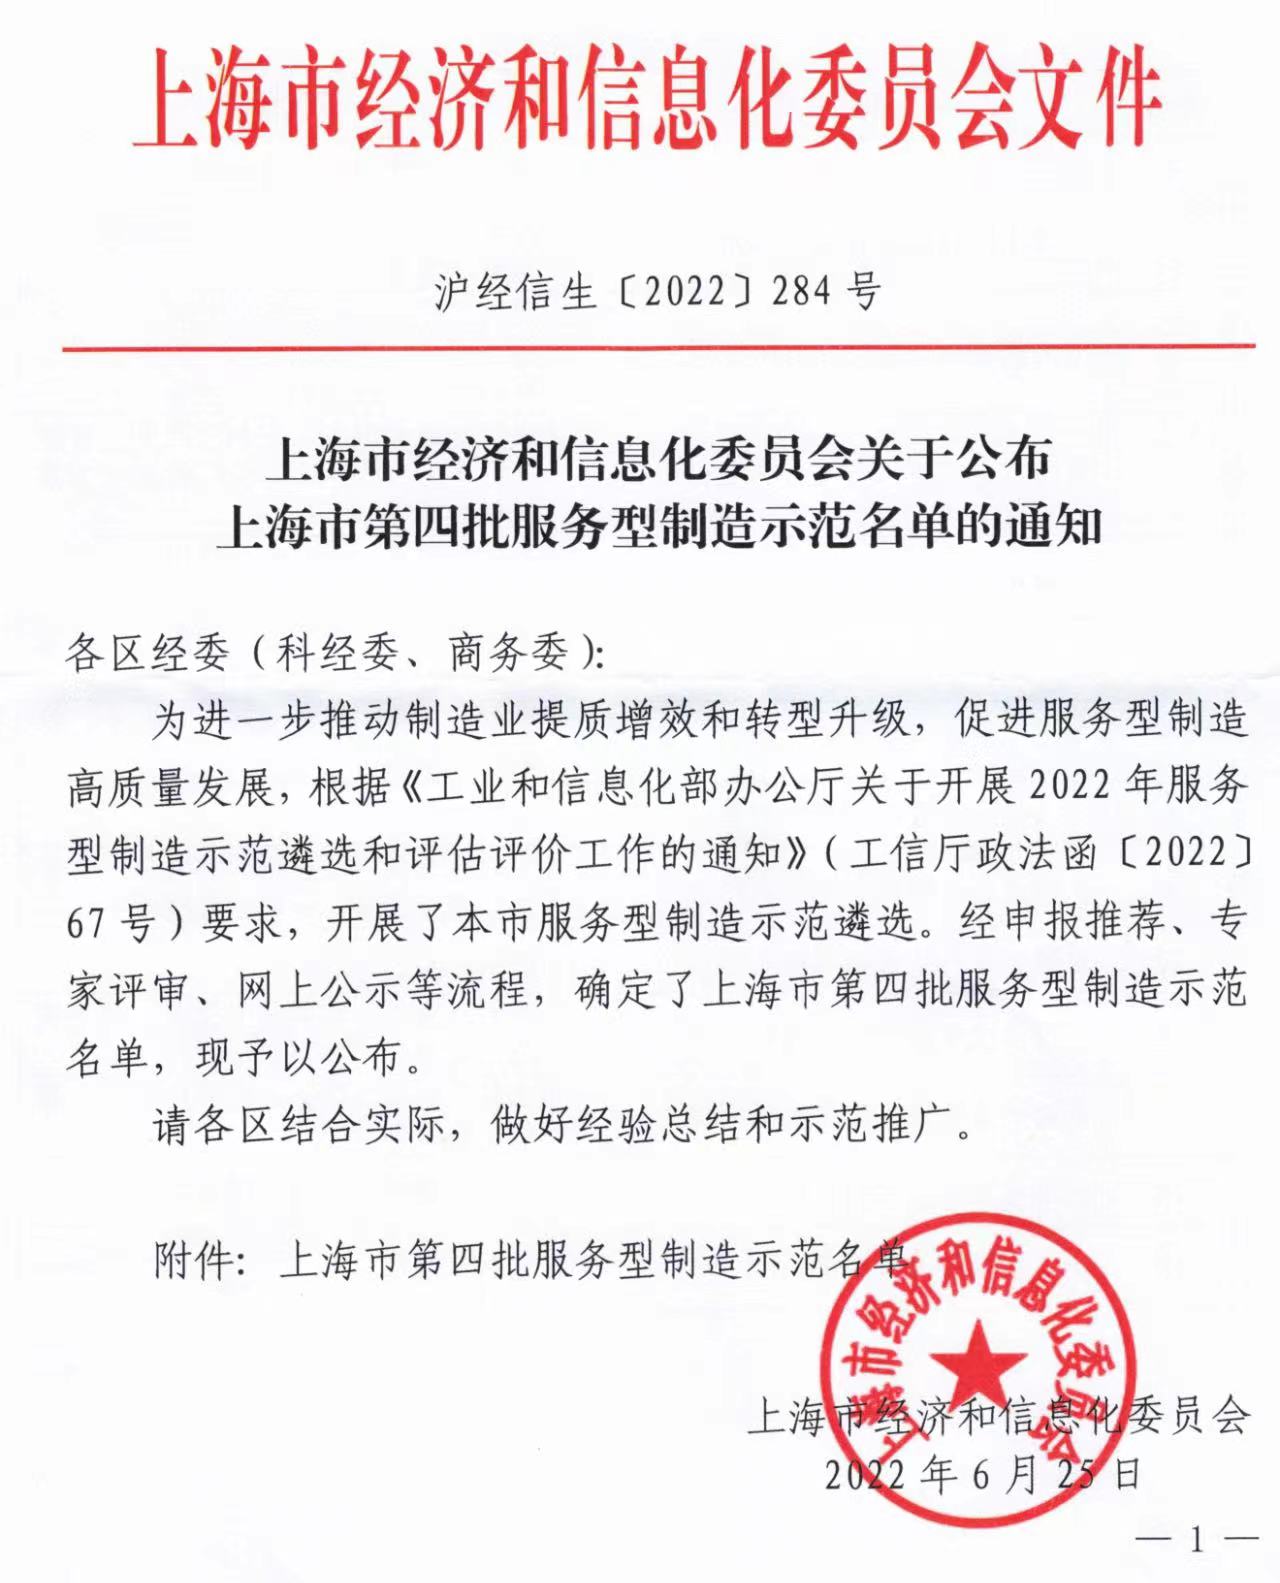 上海业腾荣获“上海市第四批服务型制造示范企业”荣誉称号